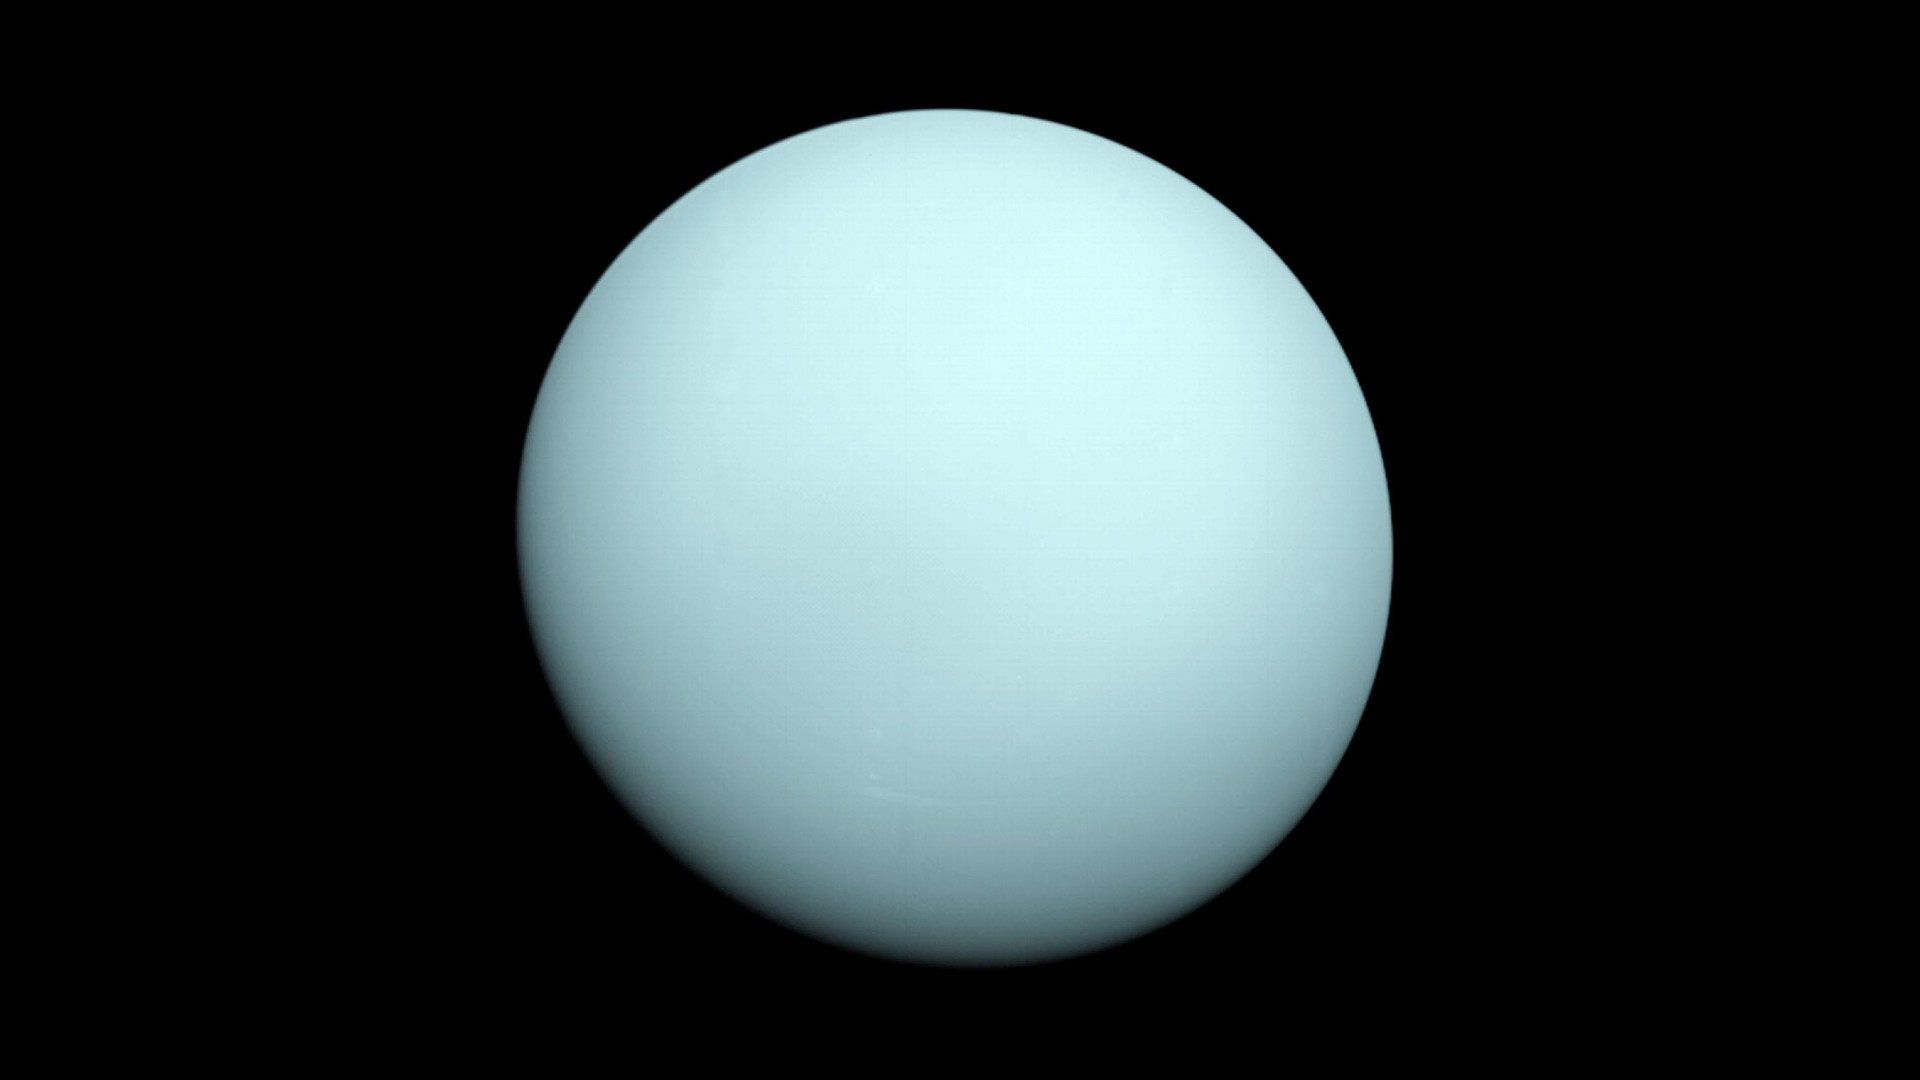 Image of Uranus taken by Voyager 2 on January 14, 1986.